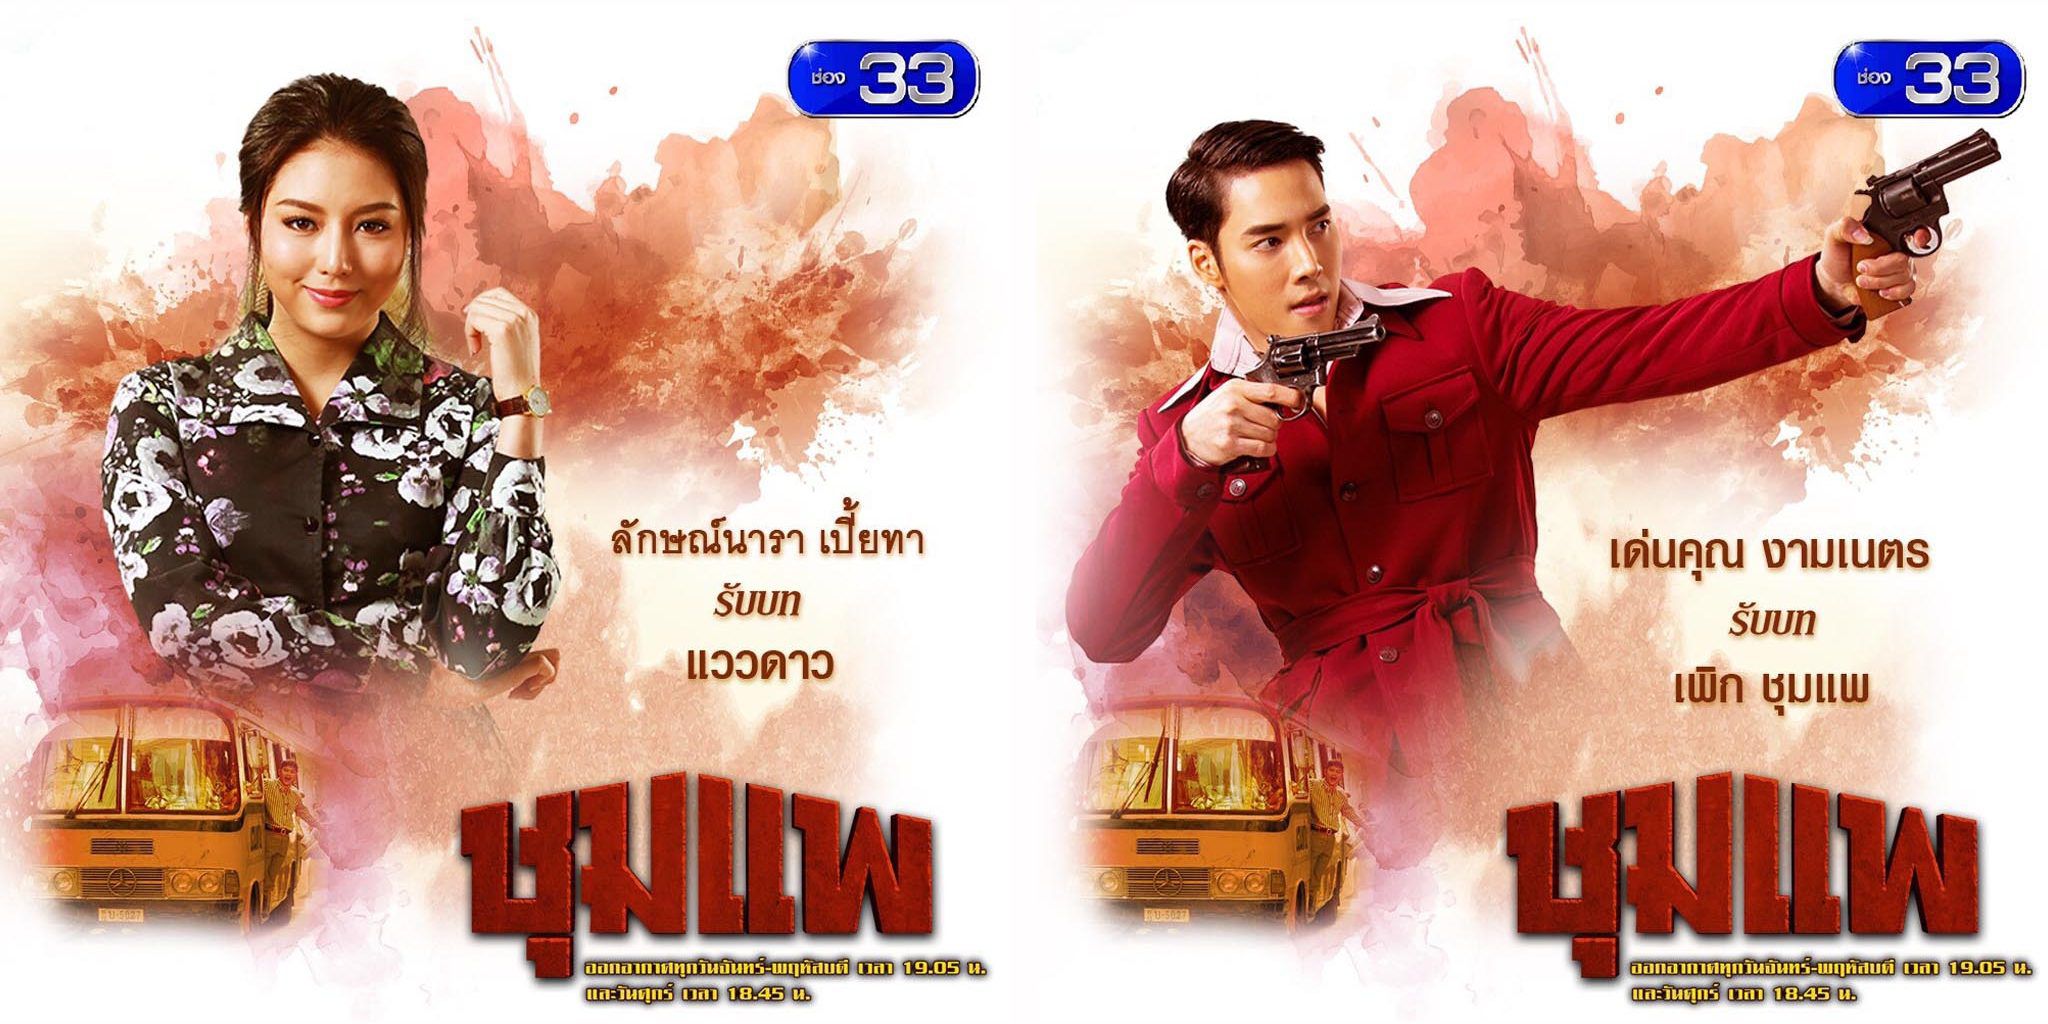 Lịch phát sóng và nội dung phim của đài CH3 Thái Lan tháng 1/2019 (4)